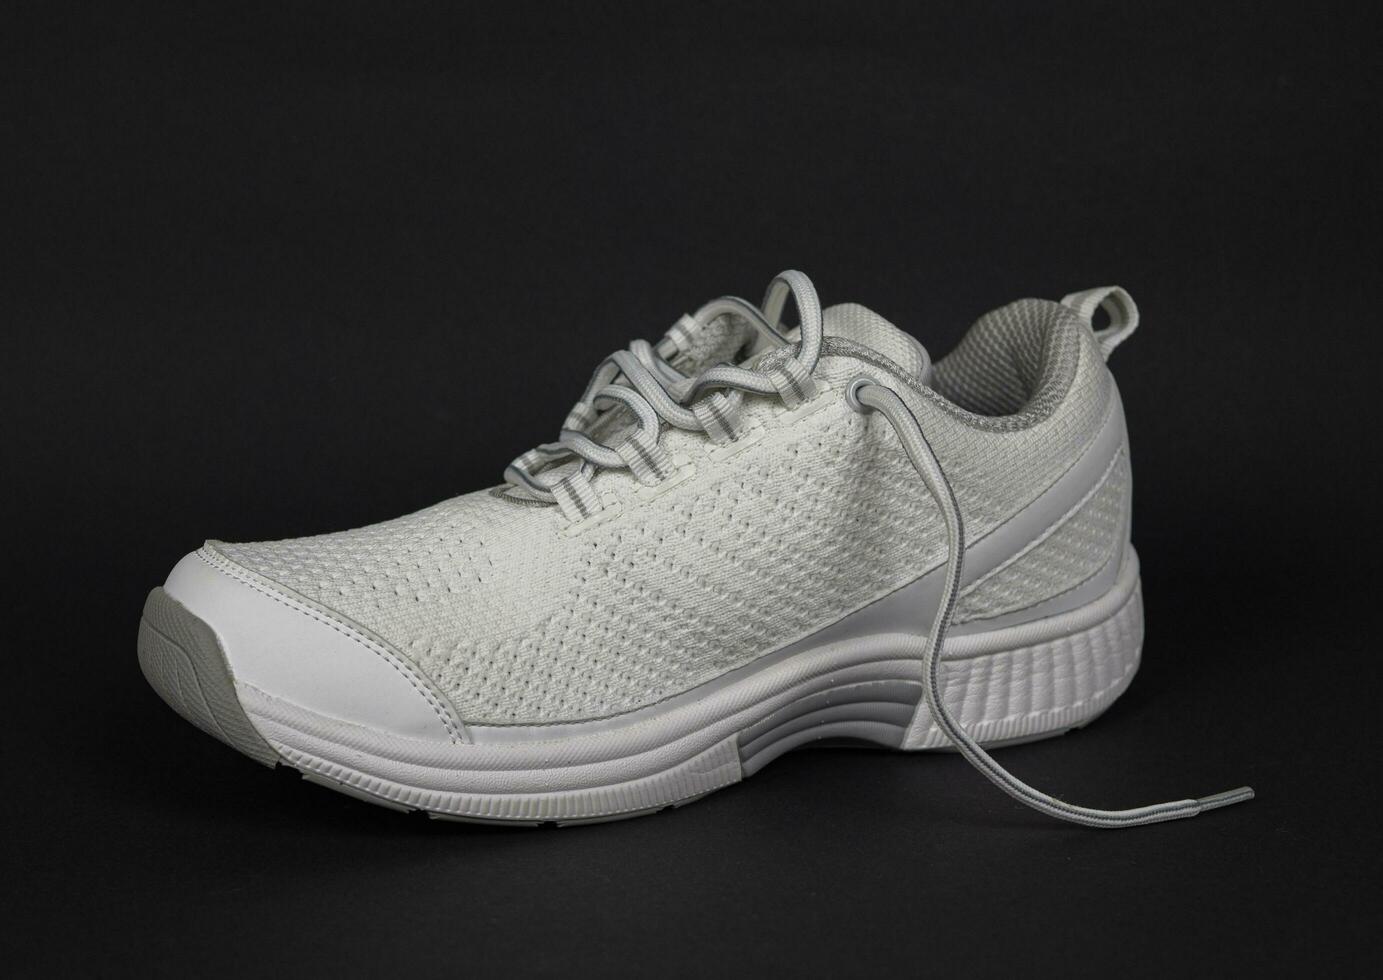 Novo prático lindo branco tênis do a elite fabricante do Alto qualidade. super foto